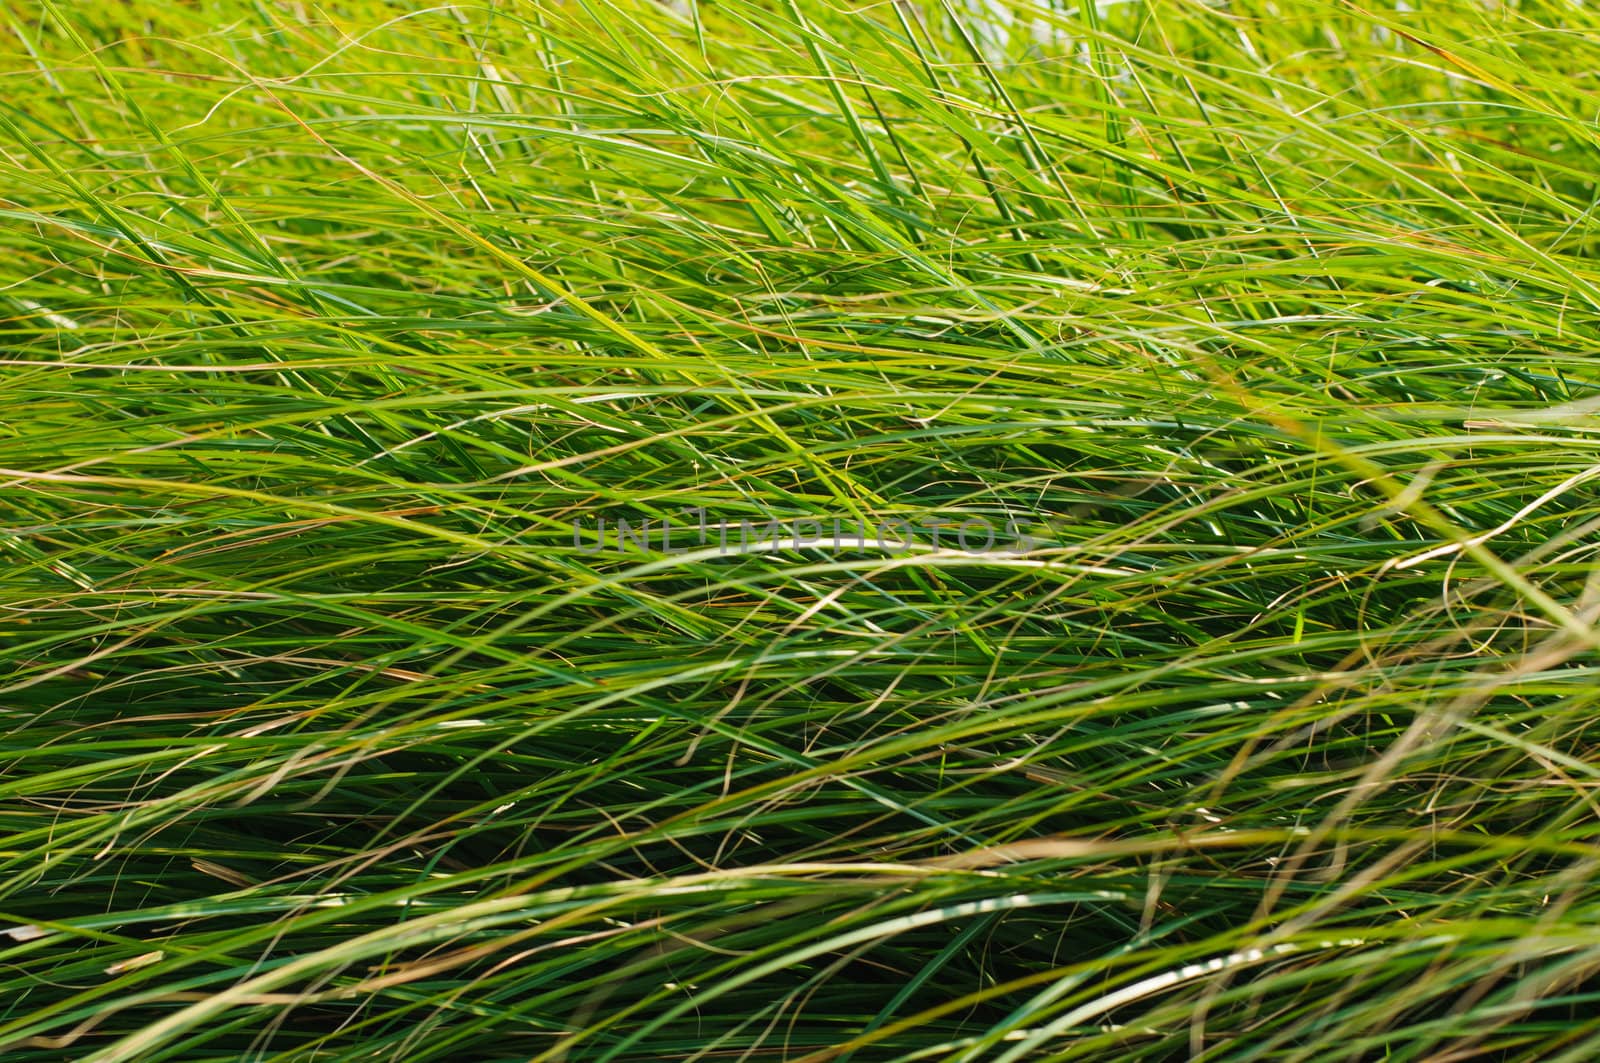 Green grass blades background by nvelichko